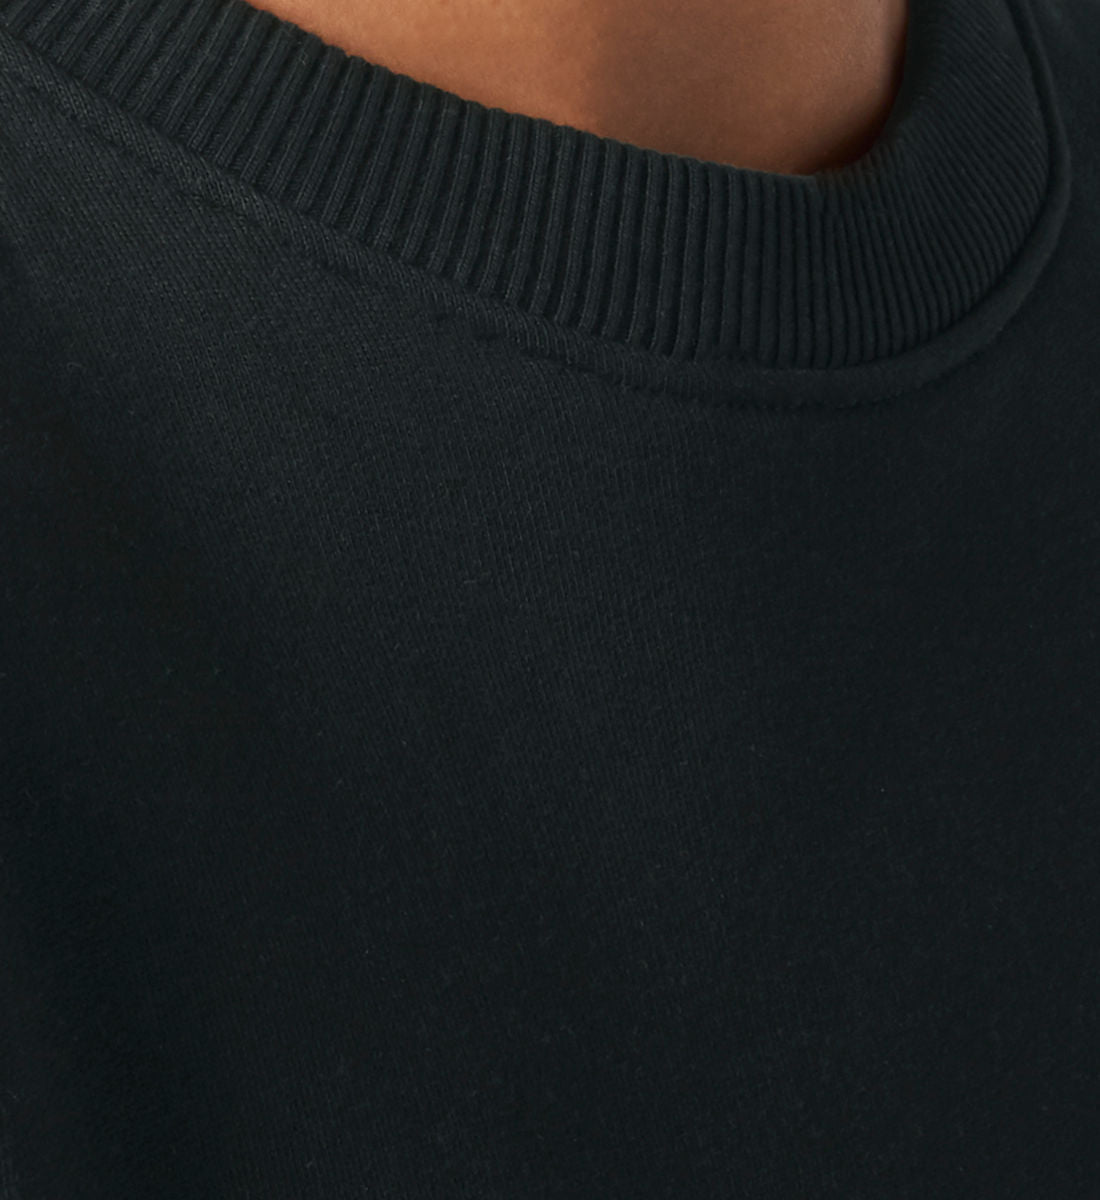 Schwarzes Sweatshirt Unisex für Damen und Herren bedruckt mit dem Design der Roger Rockawoo Kollektion LoFi Life Audio Tape